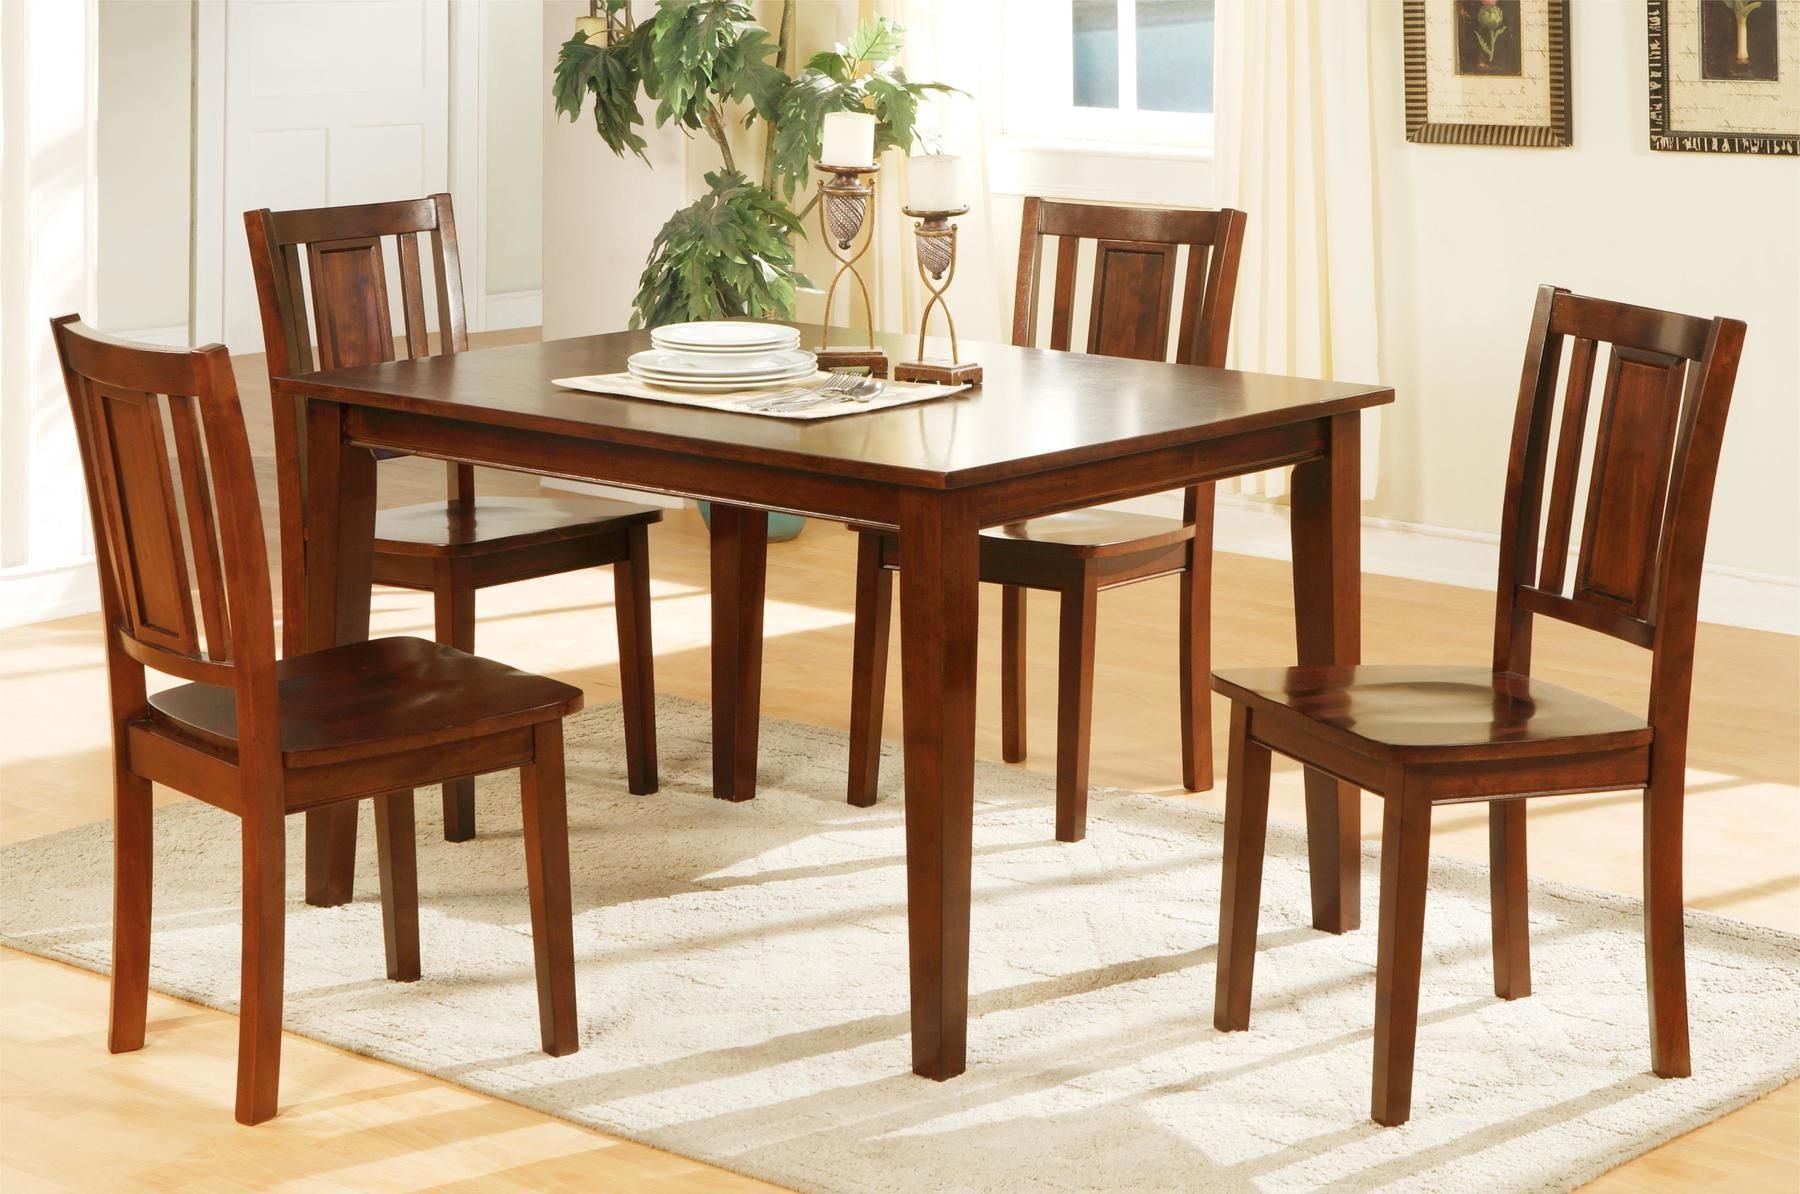 Обеденный комплект стол стулья. Столы и стулья. Деревянные столы и стулья для кухни. Стол деревянный обеденный. Стол кухонный деревянный.